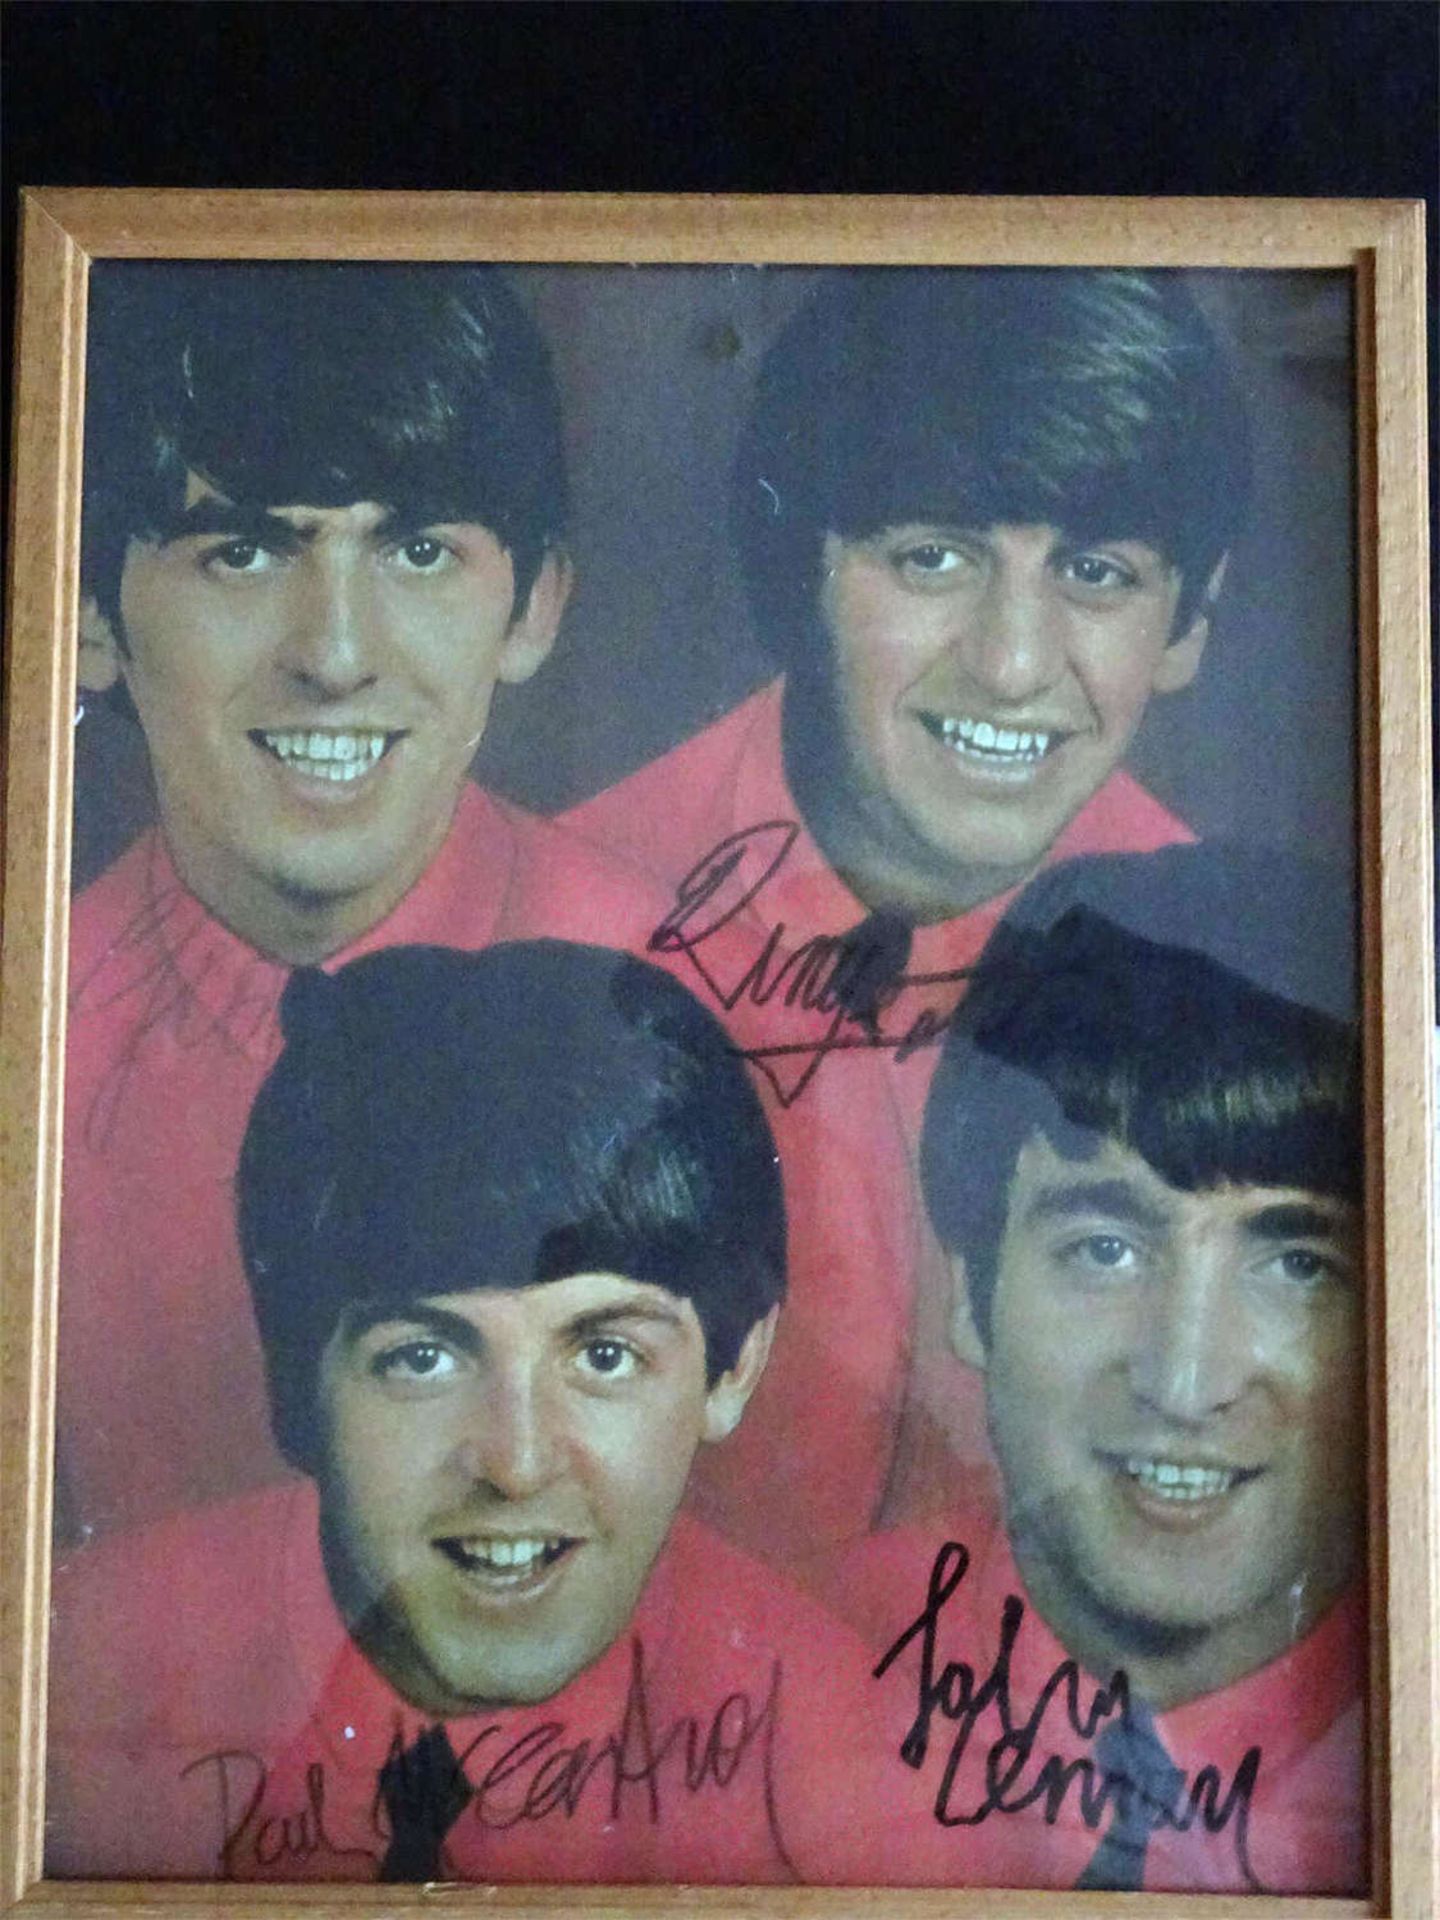 Bild von den Beatles mit Unterschriften. Höhe ca. 30 cm, Breite ca. 24 cm.Picture of the Beatles